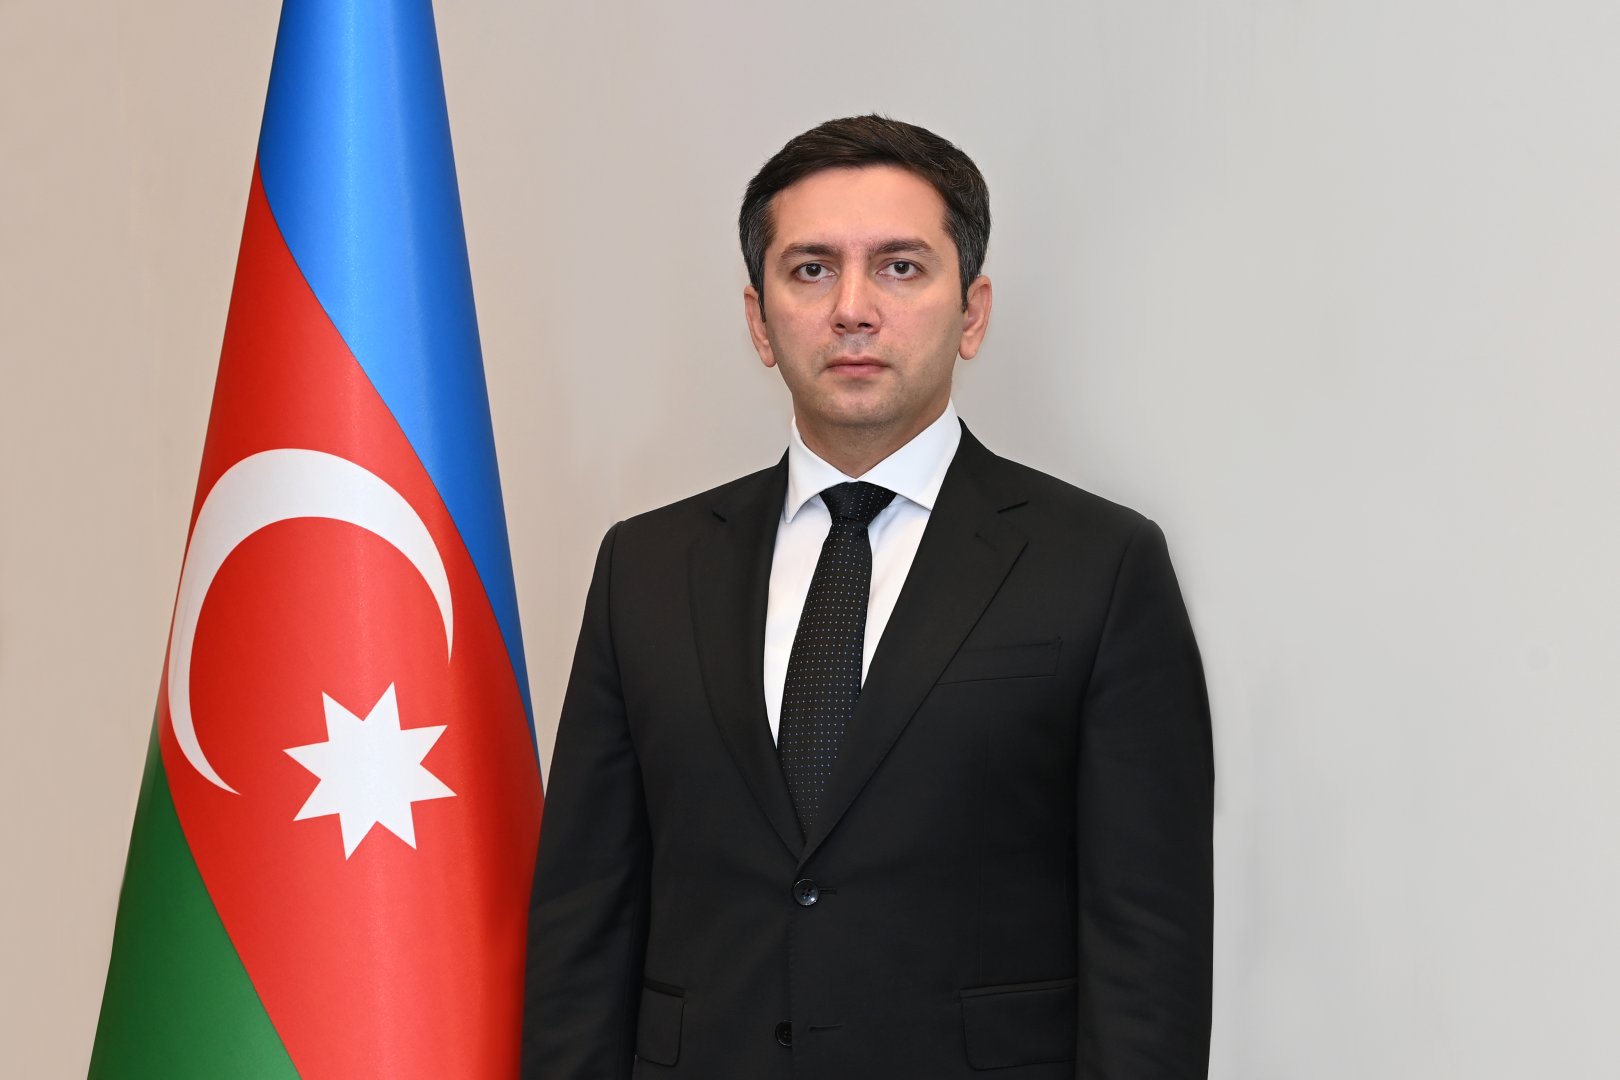 Азербайджан представил отчет Совета по правам человека ООН о процессе Универсального периодического обзора - Ялчин Рафиев